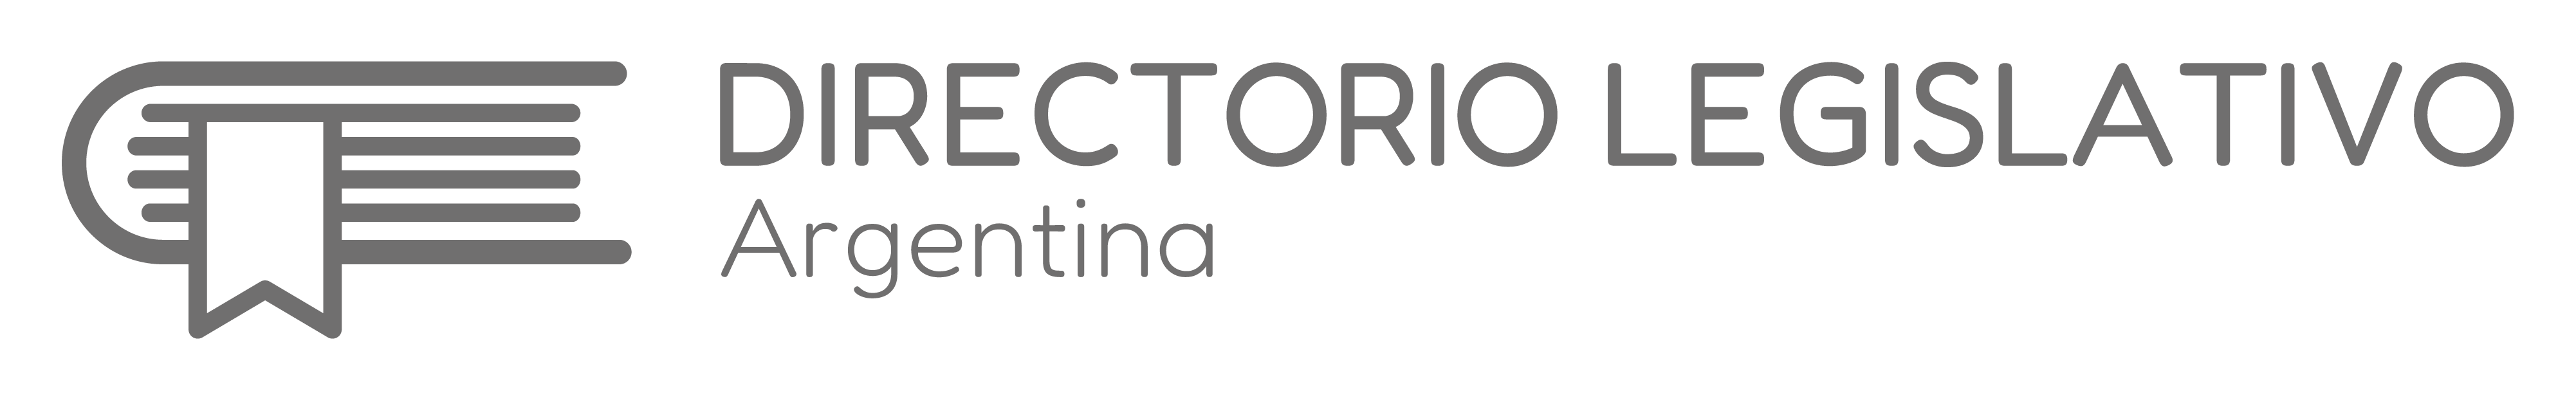 logo-directorio